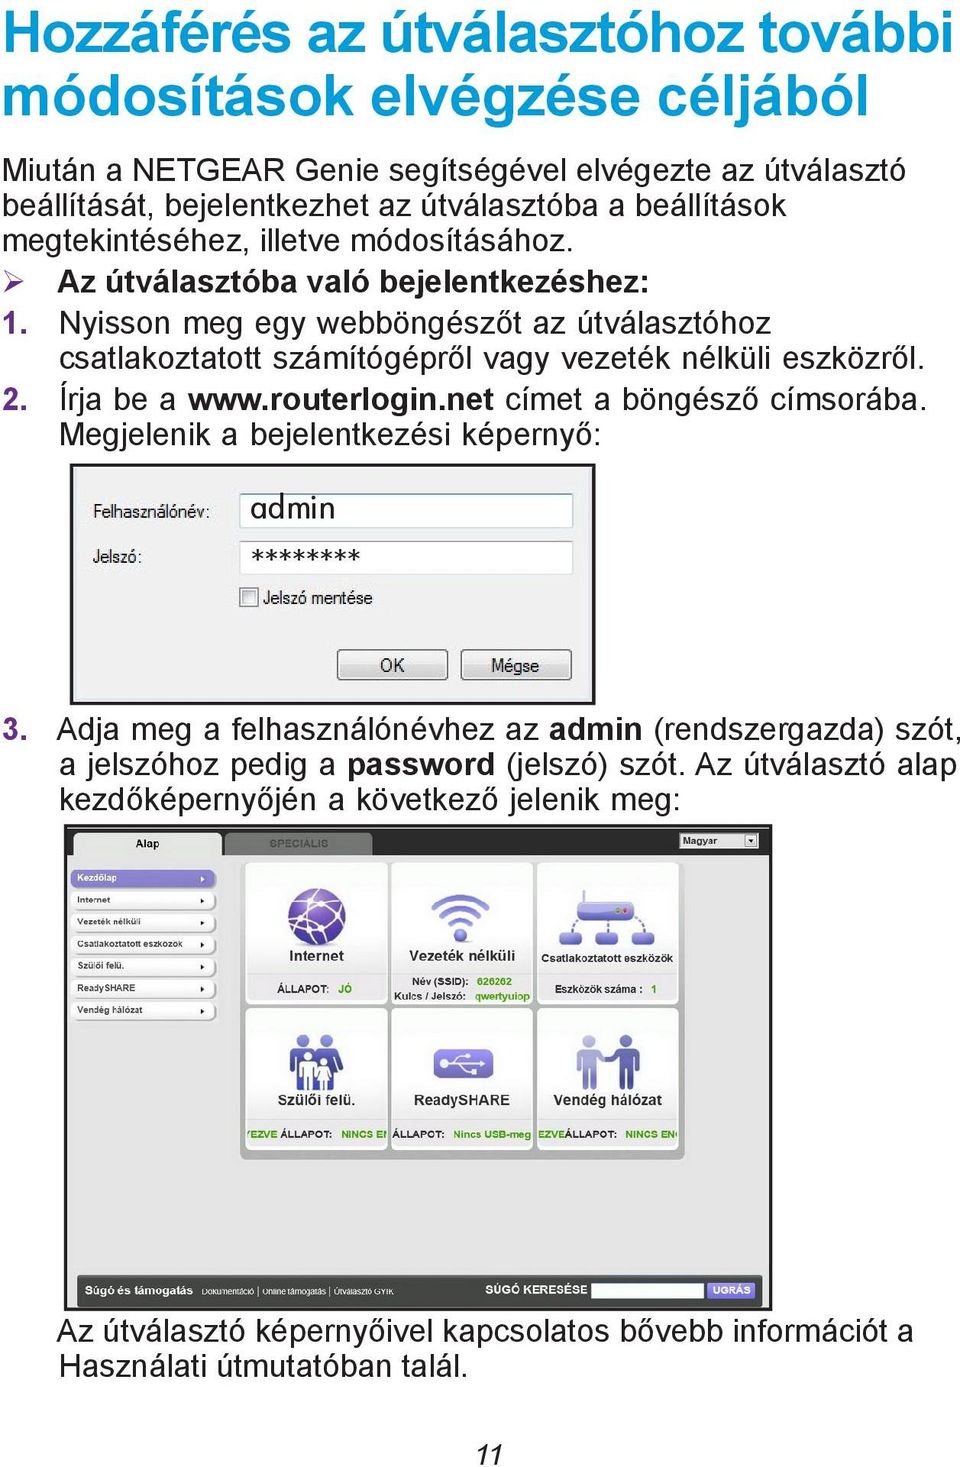 Nyisson meg egy webböngészőt az útválasztóhoz csatlakoztatott számítógépről vagy vezeték nélküli eszközről. 2. Írja be a www.routerlogin.net címet a böngésző címsorába.